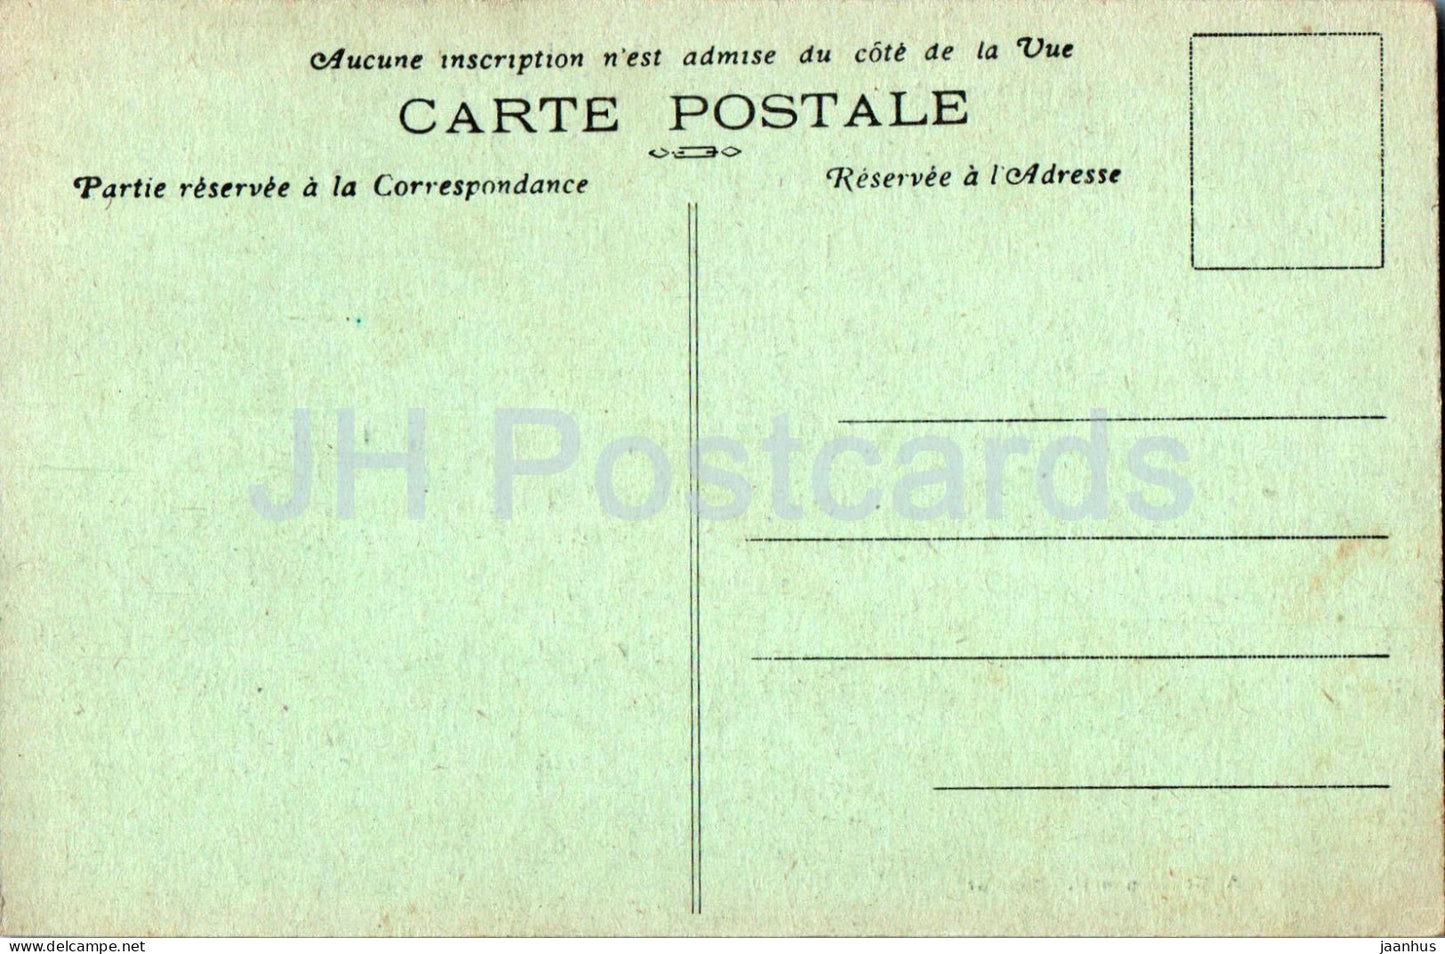 Saumur - Vue panoramique prise du Chateau - 254 - alte Postkarte - Frankreich - unbenutzt 